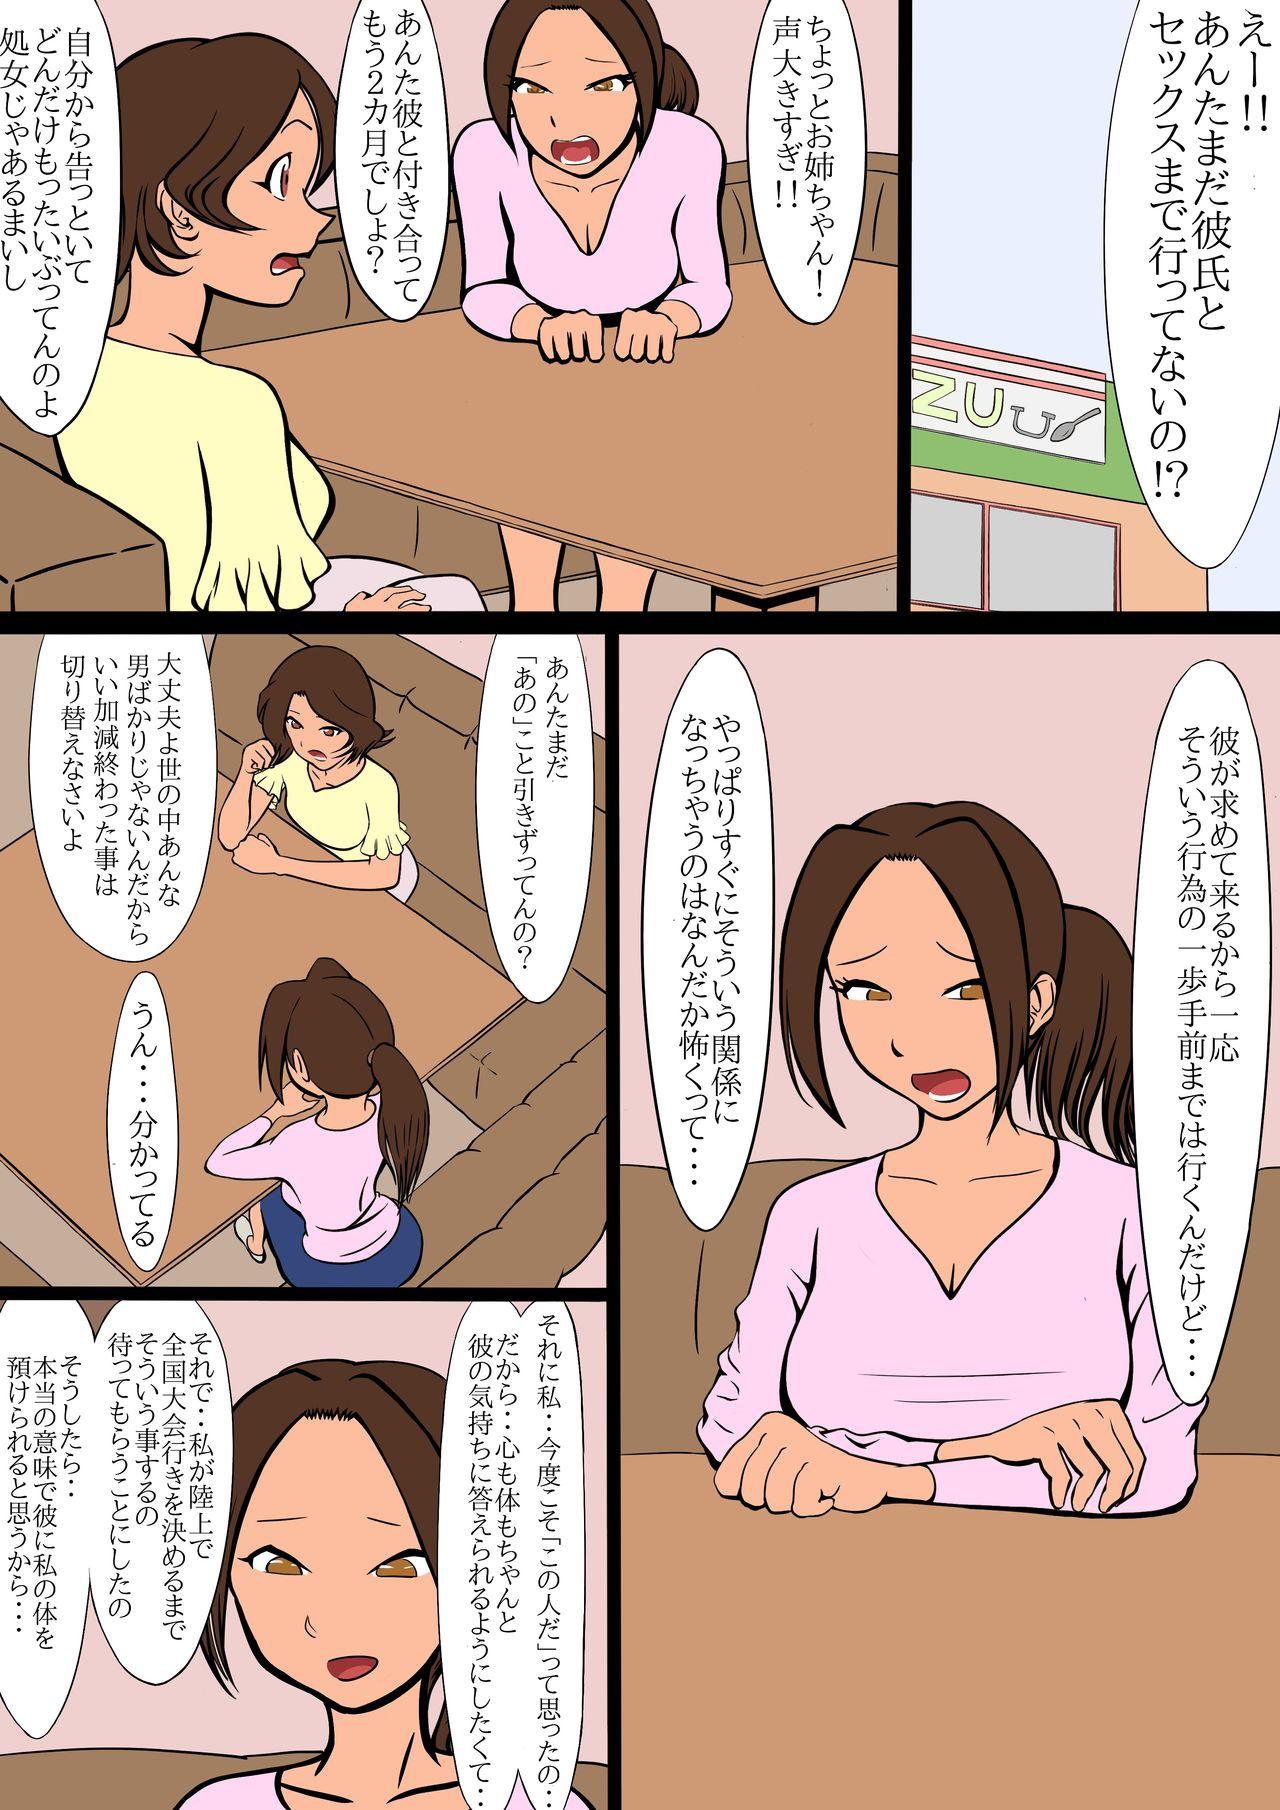 Wank netorare furasshu bakku - Original Twistys - Page 11